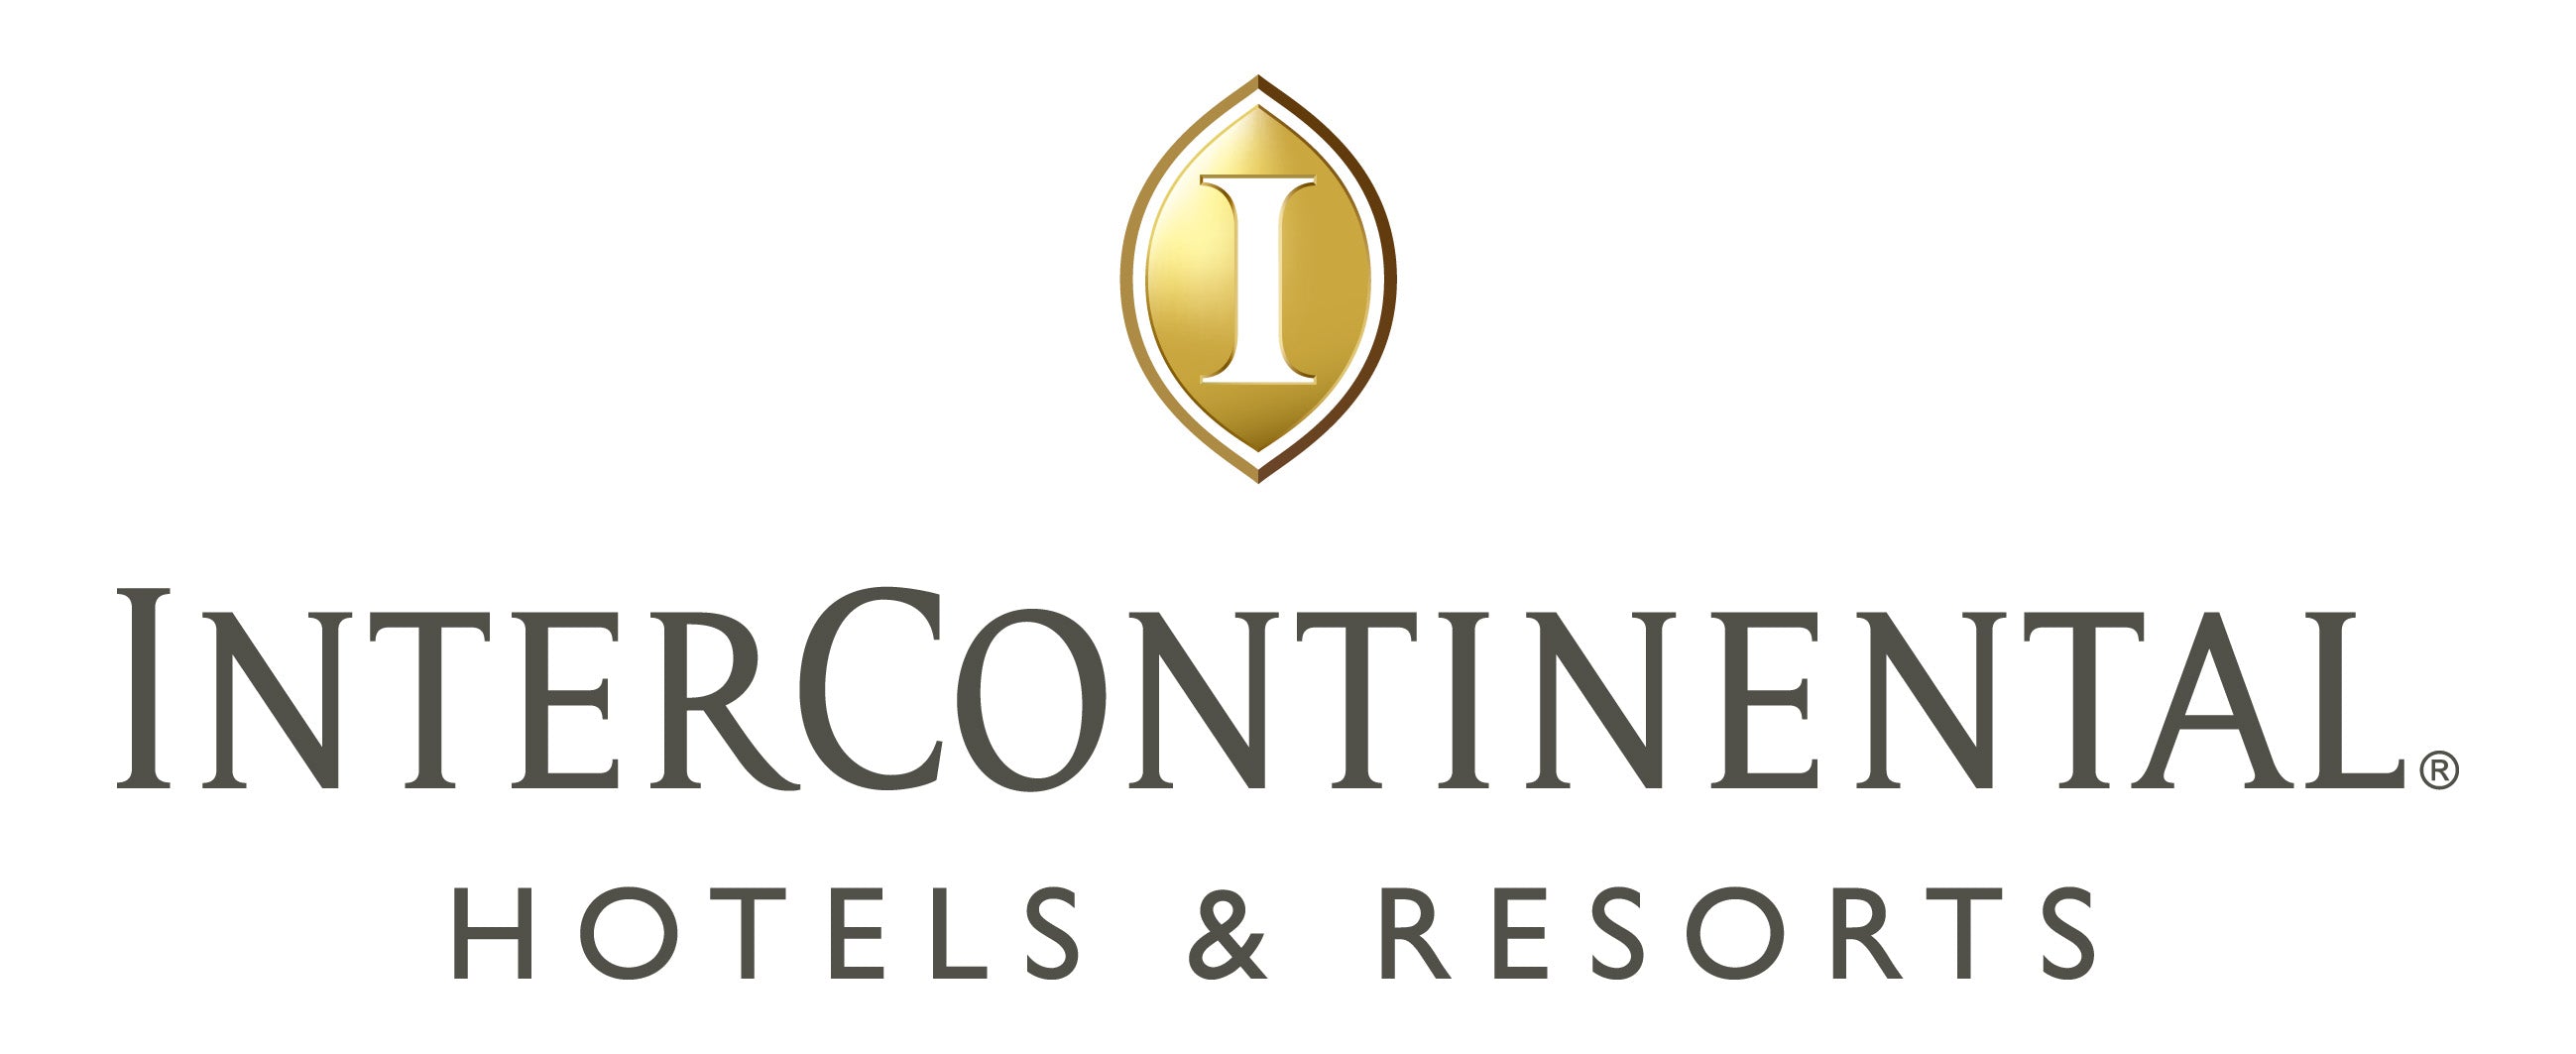 Intercontinental hotels and resorts logo